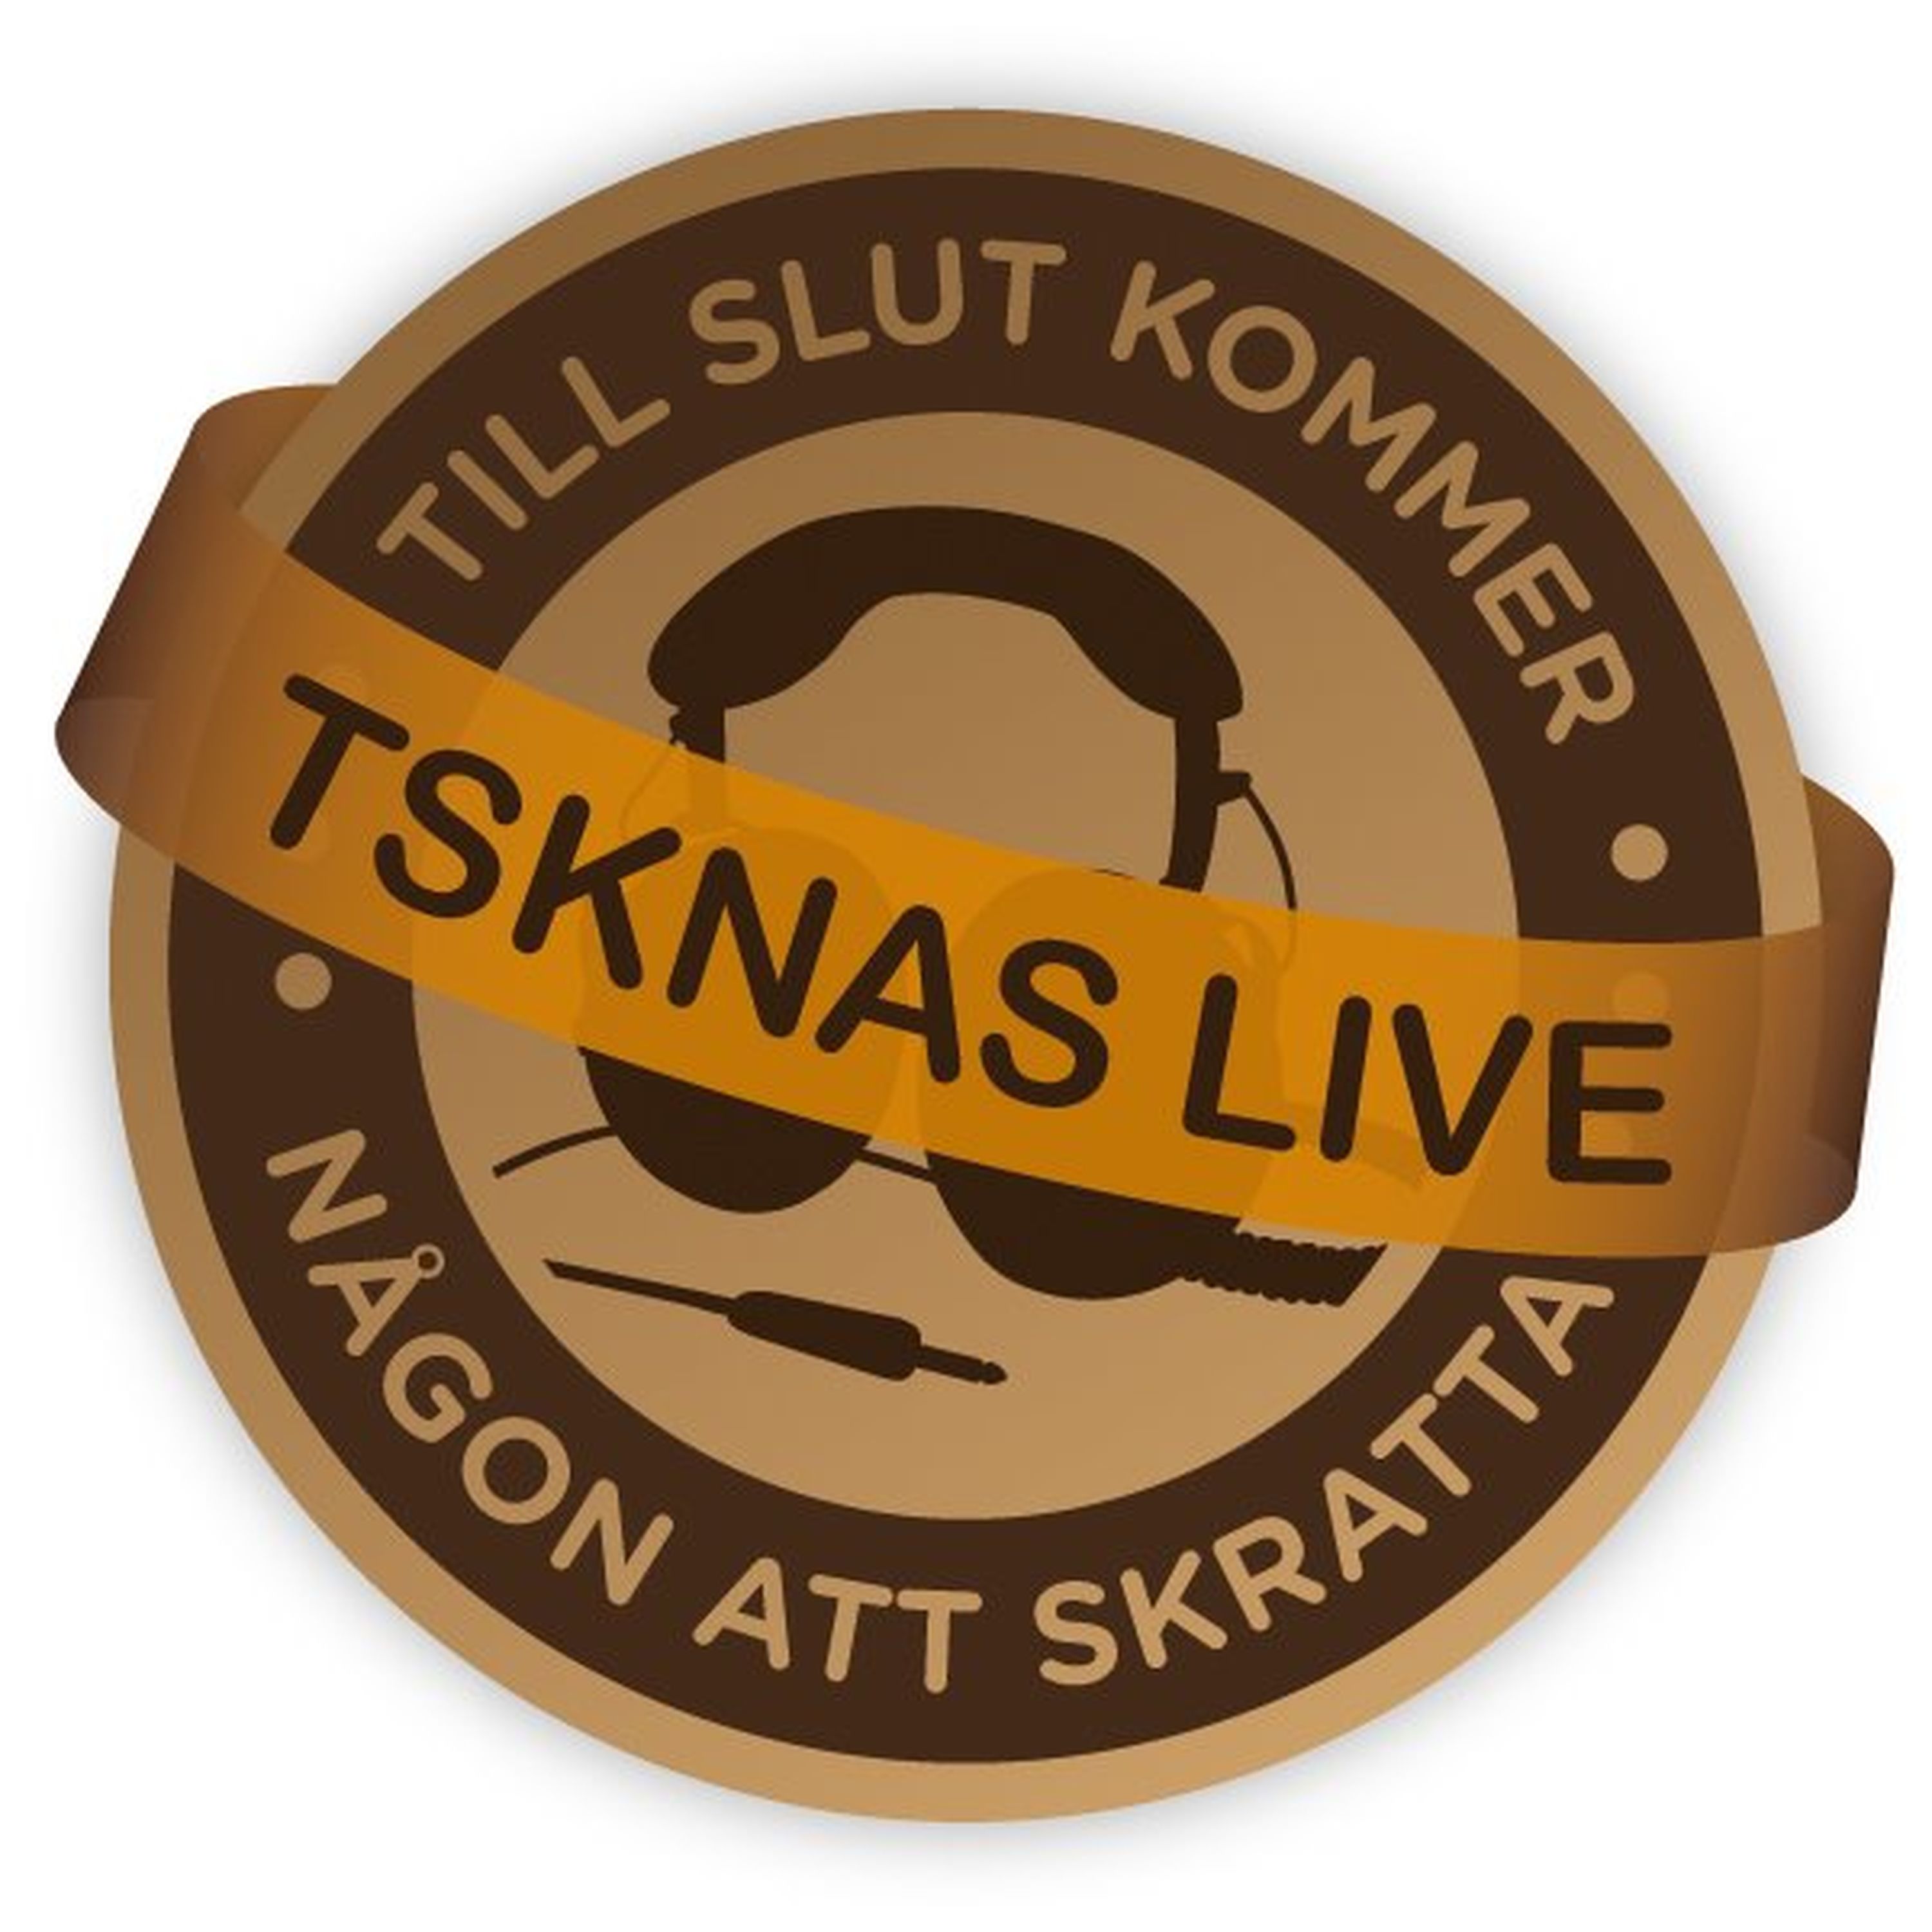 249: TSKNAS Live i Göteborg